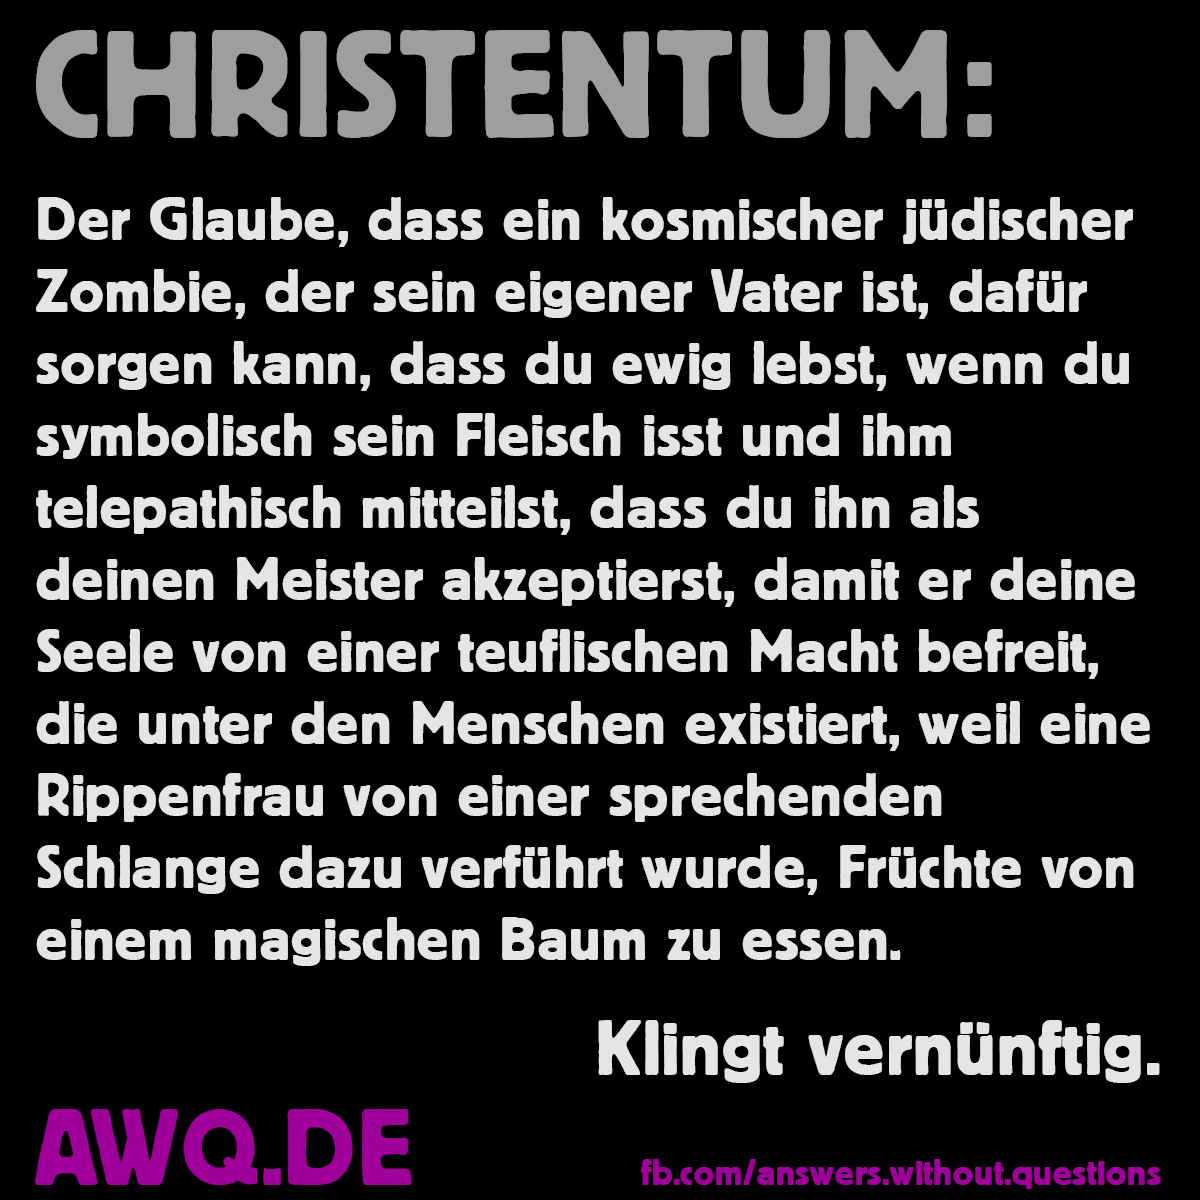 Christentum - Klingt vernünftig...